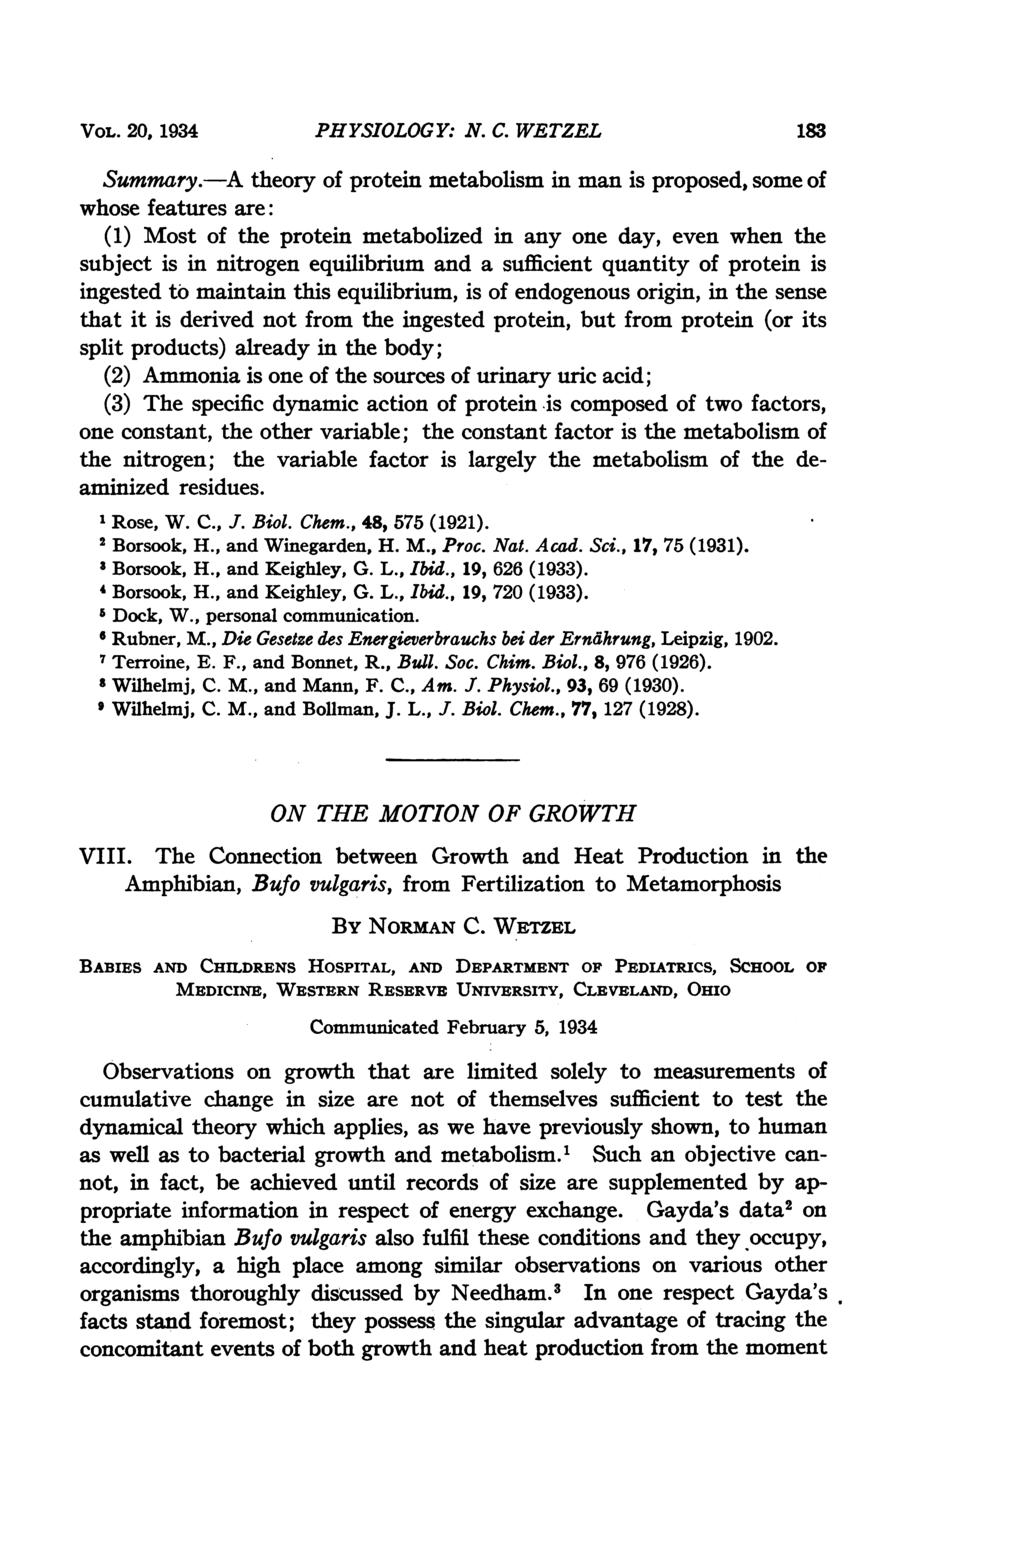 VOL. 20, 1934 PHYSIOLOGY: N. C. WETZEL 183 Summary.